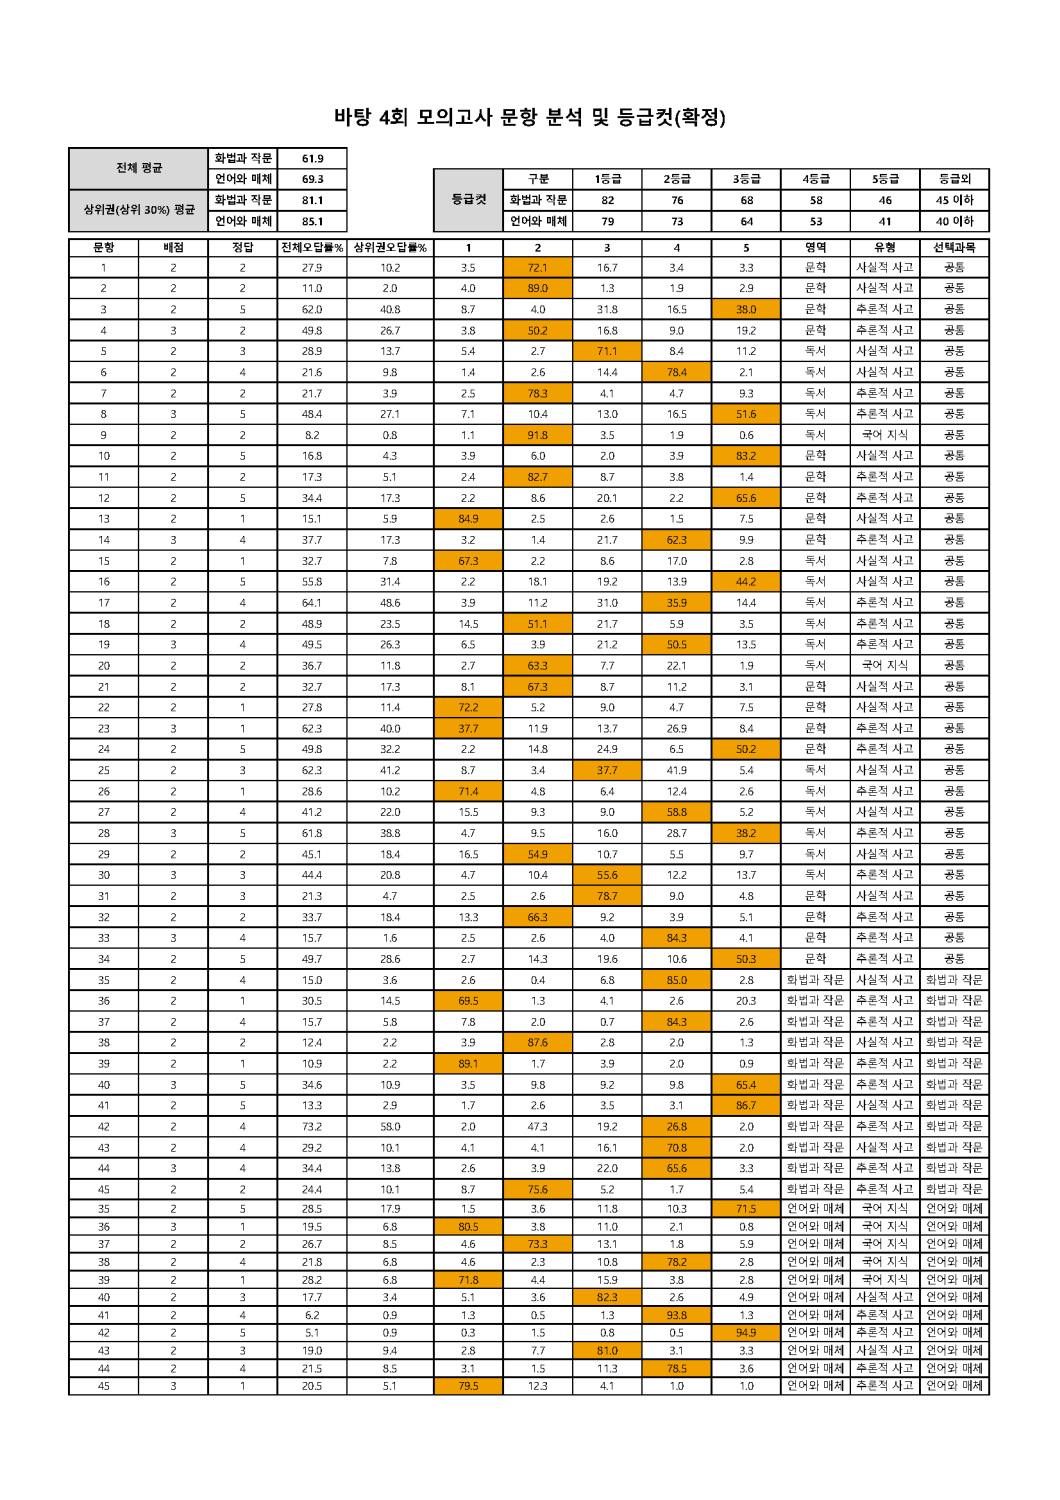 2022학년도 바탕 문항분석표 및 등급컷(1회~10회)_페이지_04.png